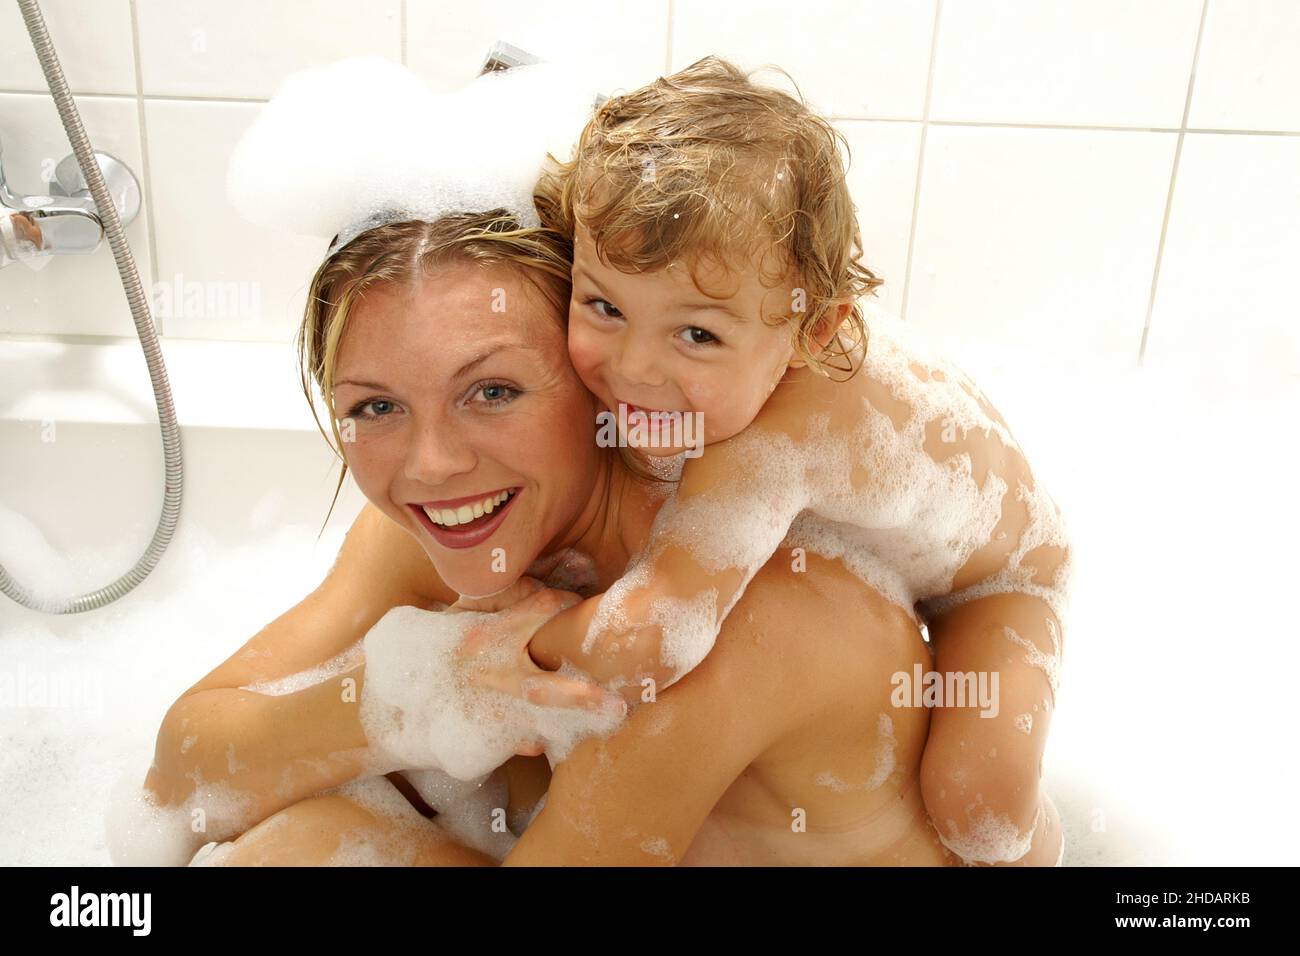 Mutter und kelienr Sohn haben Spass in der Badewanne, Blond, Blonde, Blondine, Frau, 25, 30, Sohn, 3, 4, Jahre, Stock Photo